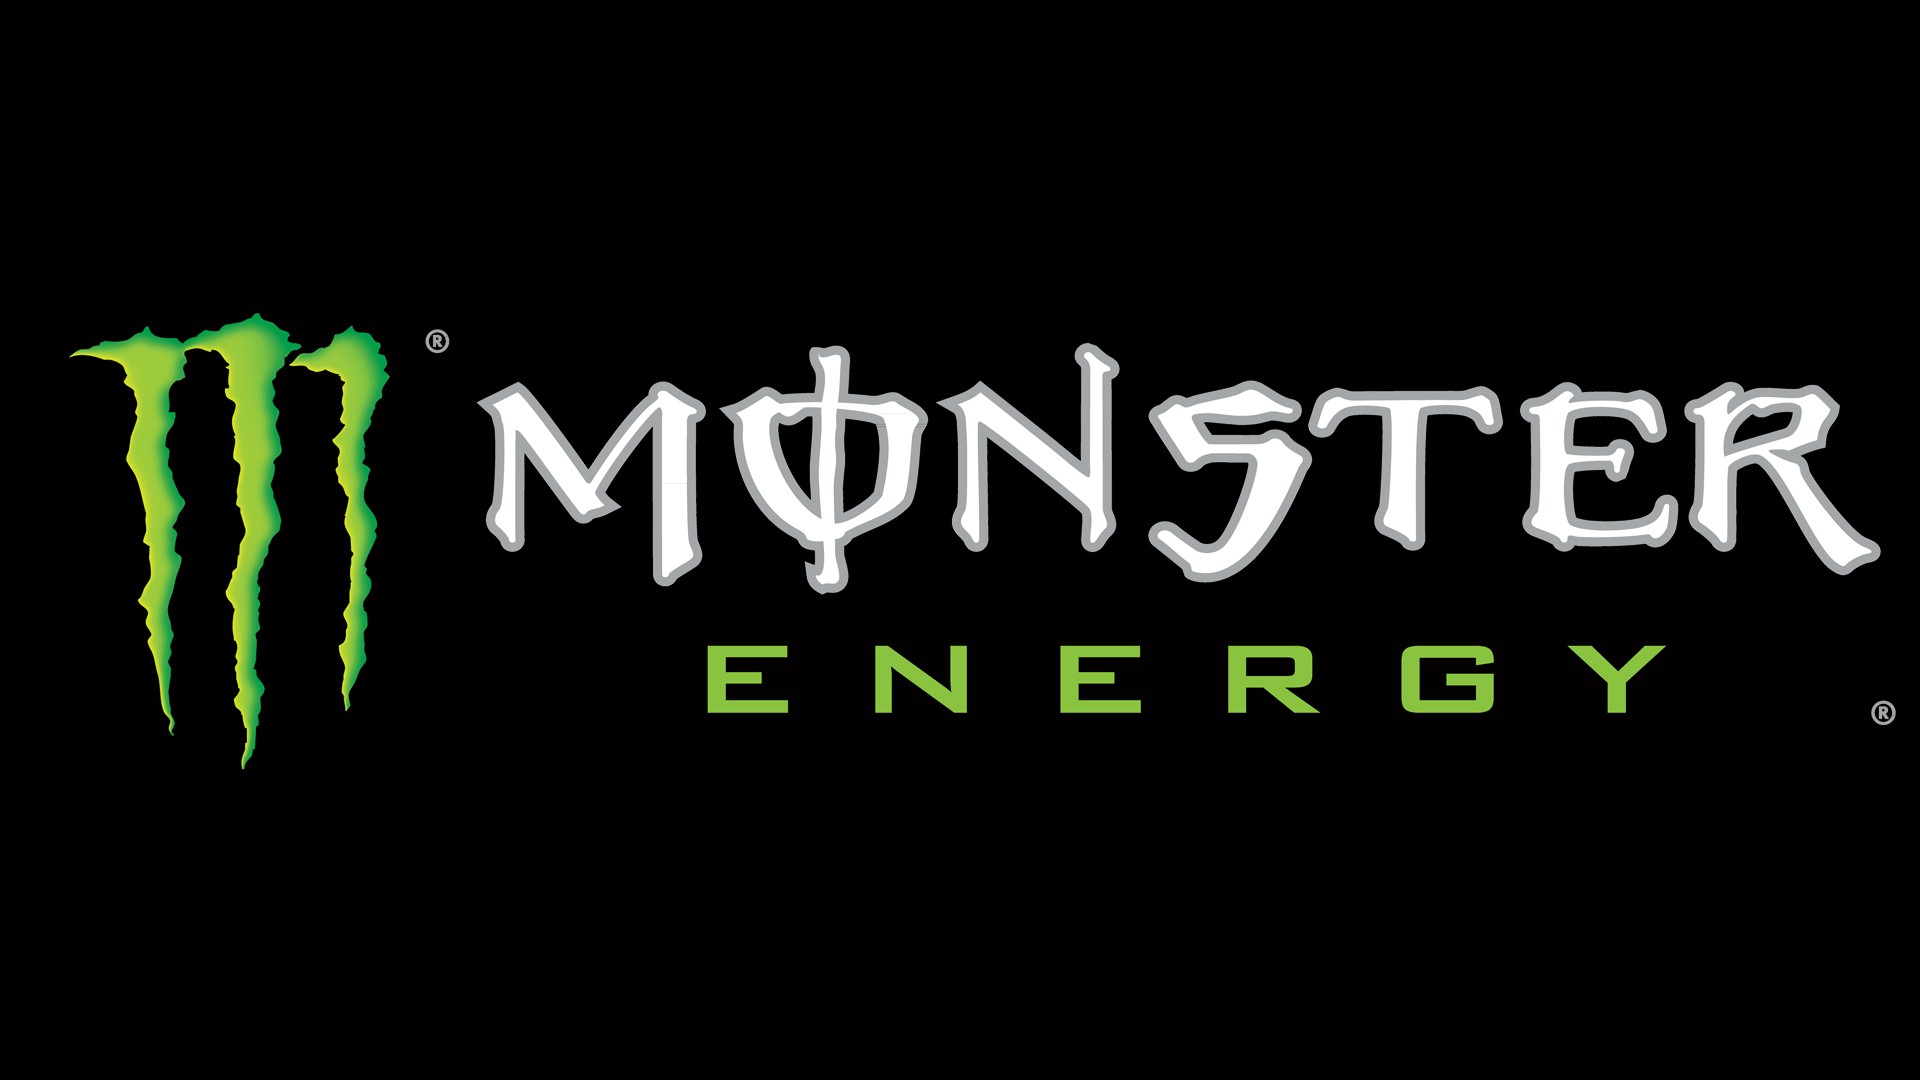 MONSTER ENERGY